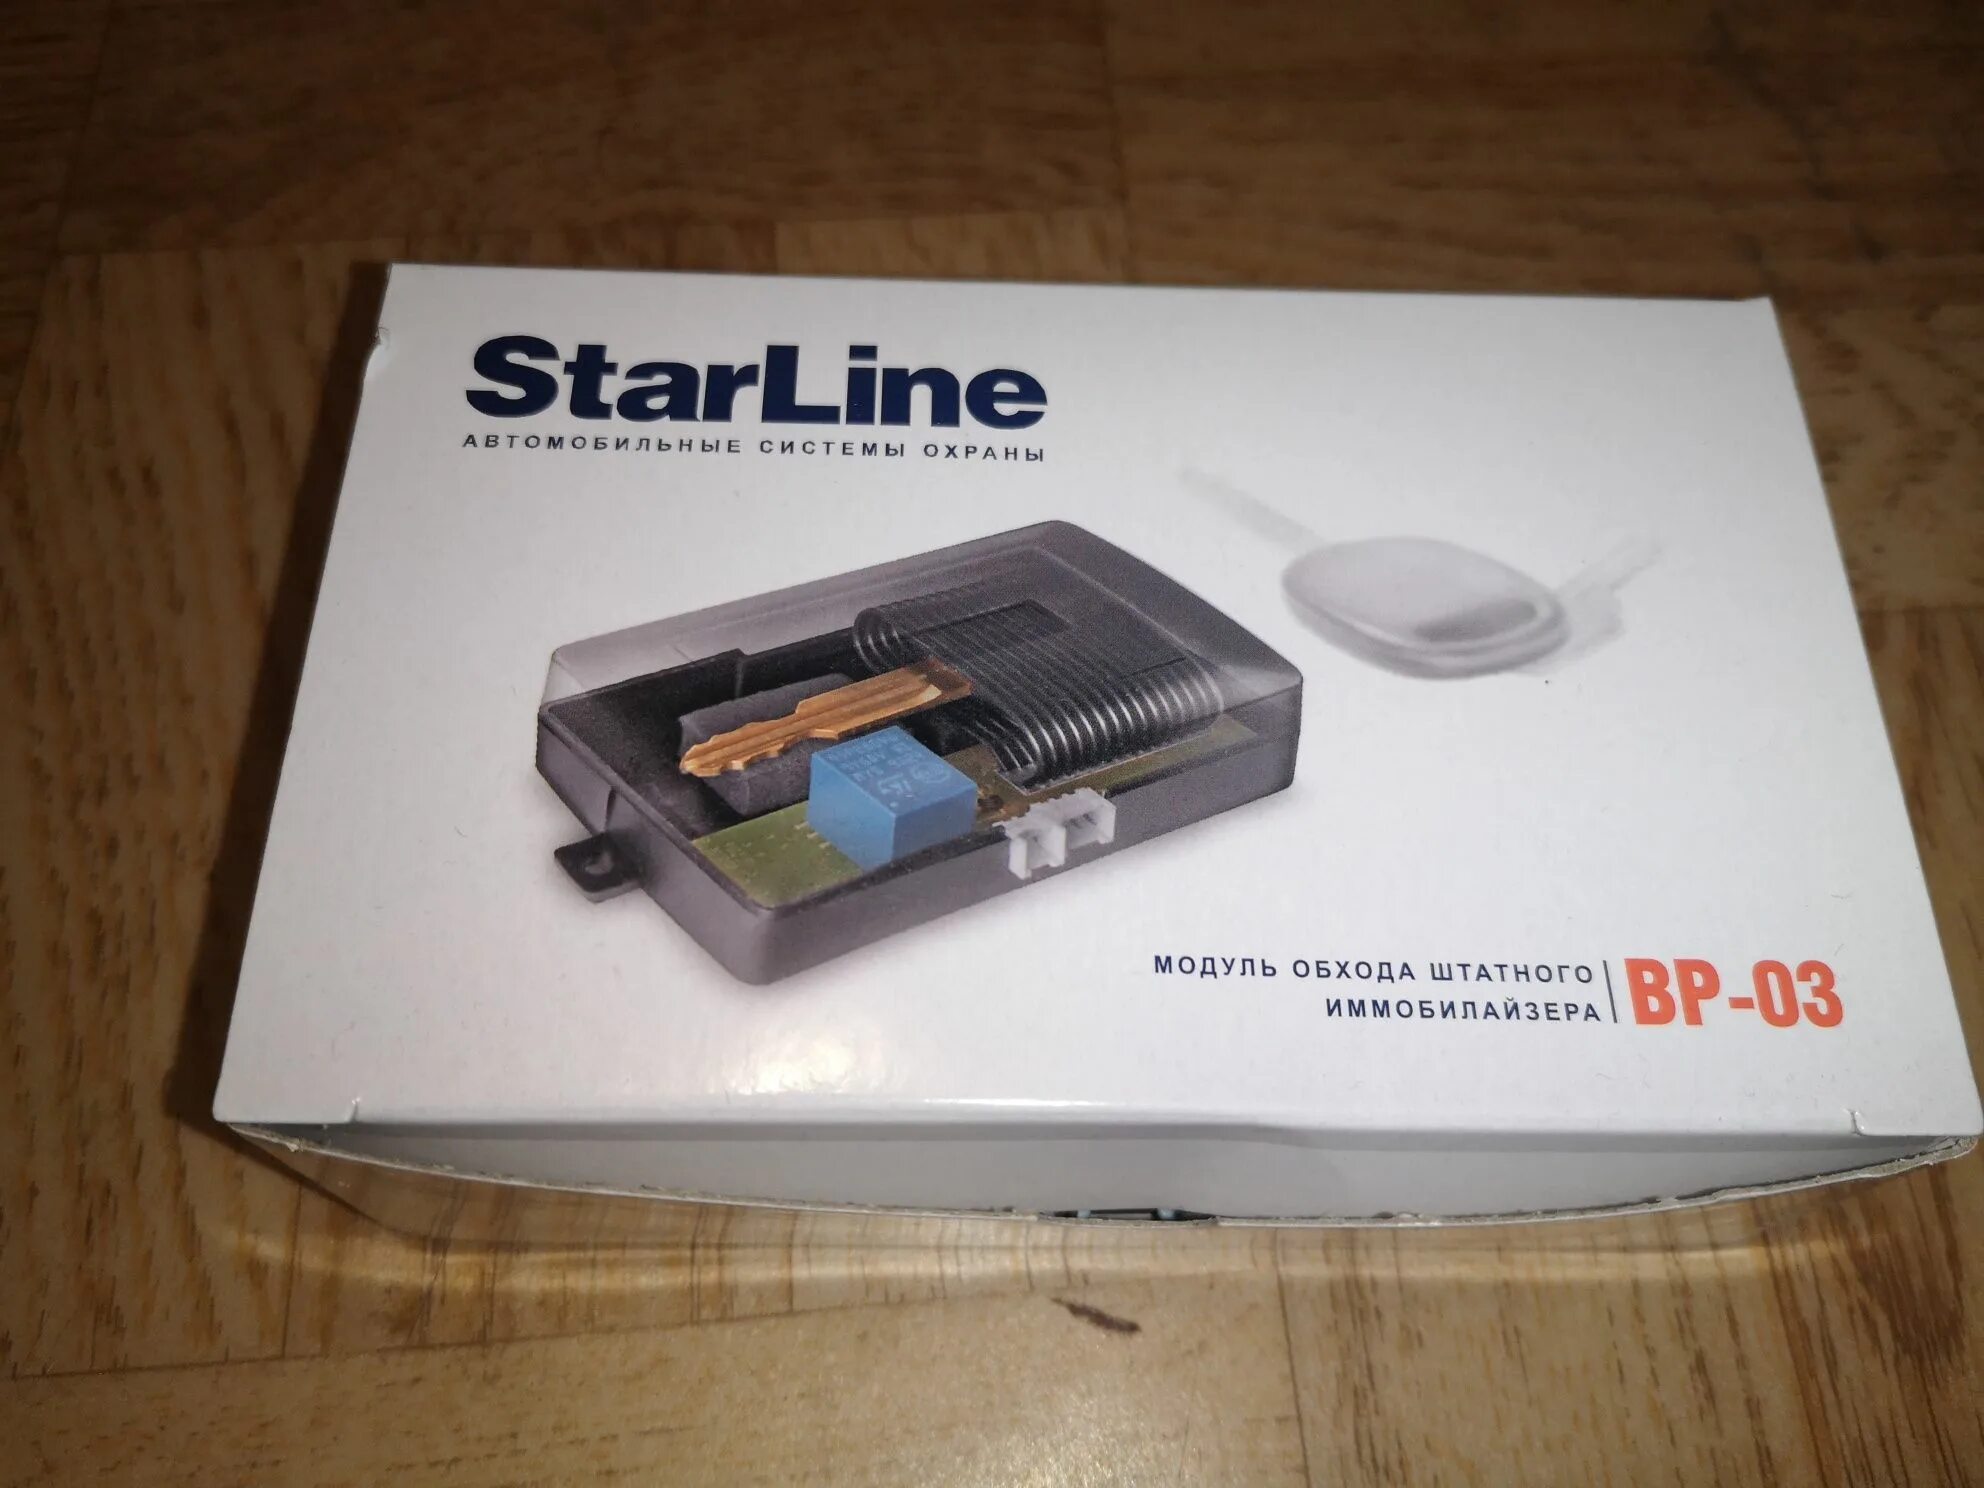 Блок обхода иммобилайзера STARLINE a8. Обходчик иммобилайзера STARLINE a93 v2. Модуль обхода штатного иммобилайзера STARLINE. Обходчик иммобилайзера STARLINE 1191. Обход иммобилайзера starline